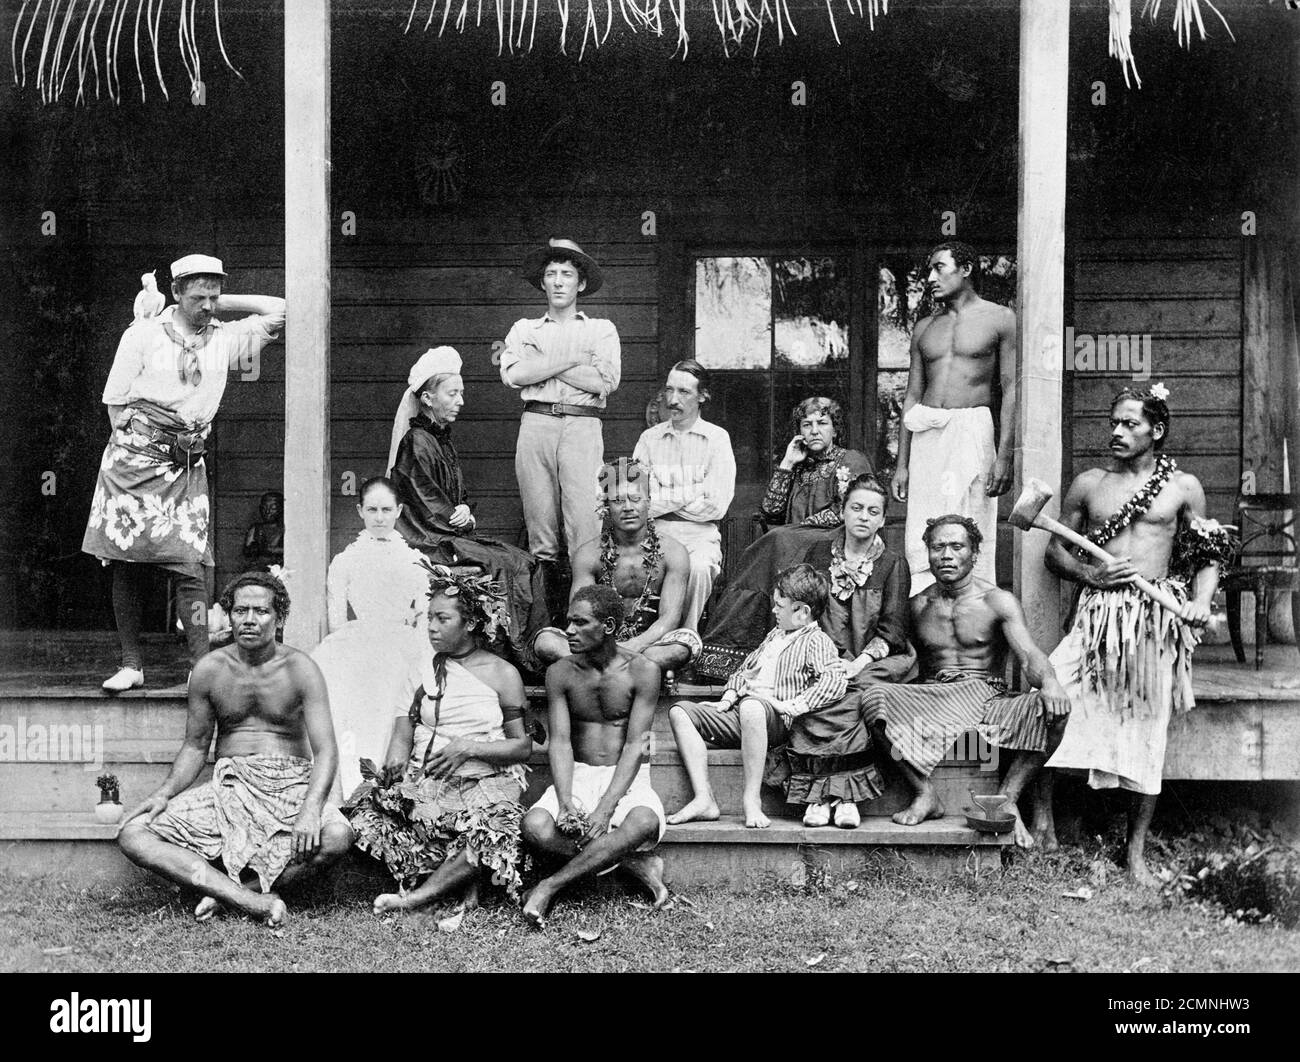 Robert Louis Stevenson (1850-1894). Photographie de groupe de l'écrivain écossais Robert Louis Stevenson (assis au centre) avec sa famille et ses amis à Vailima, Samoa, vers 1890-94 Banque D'Images